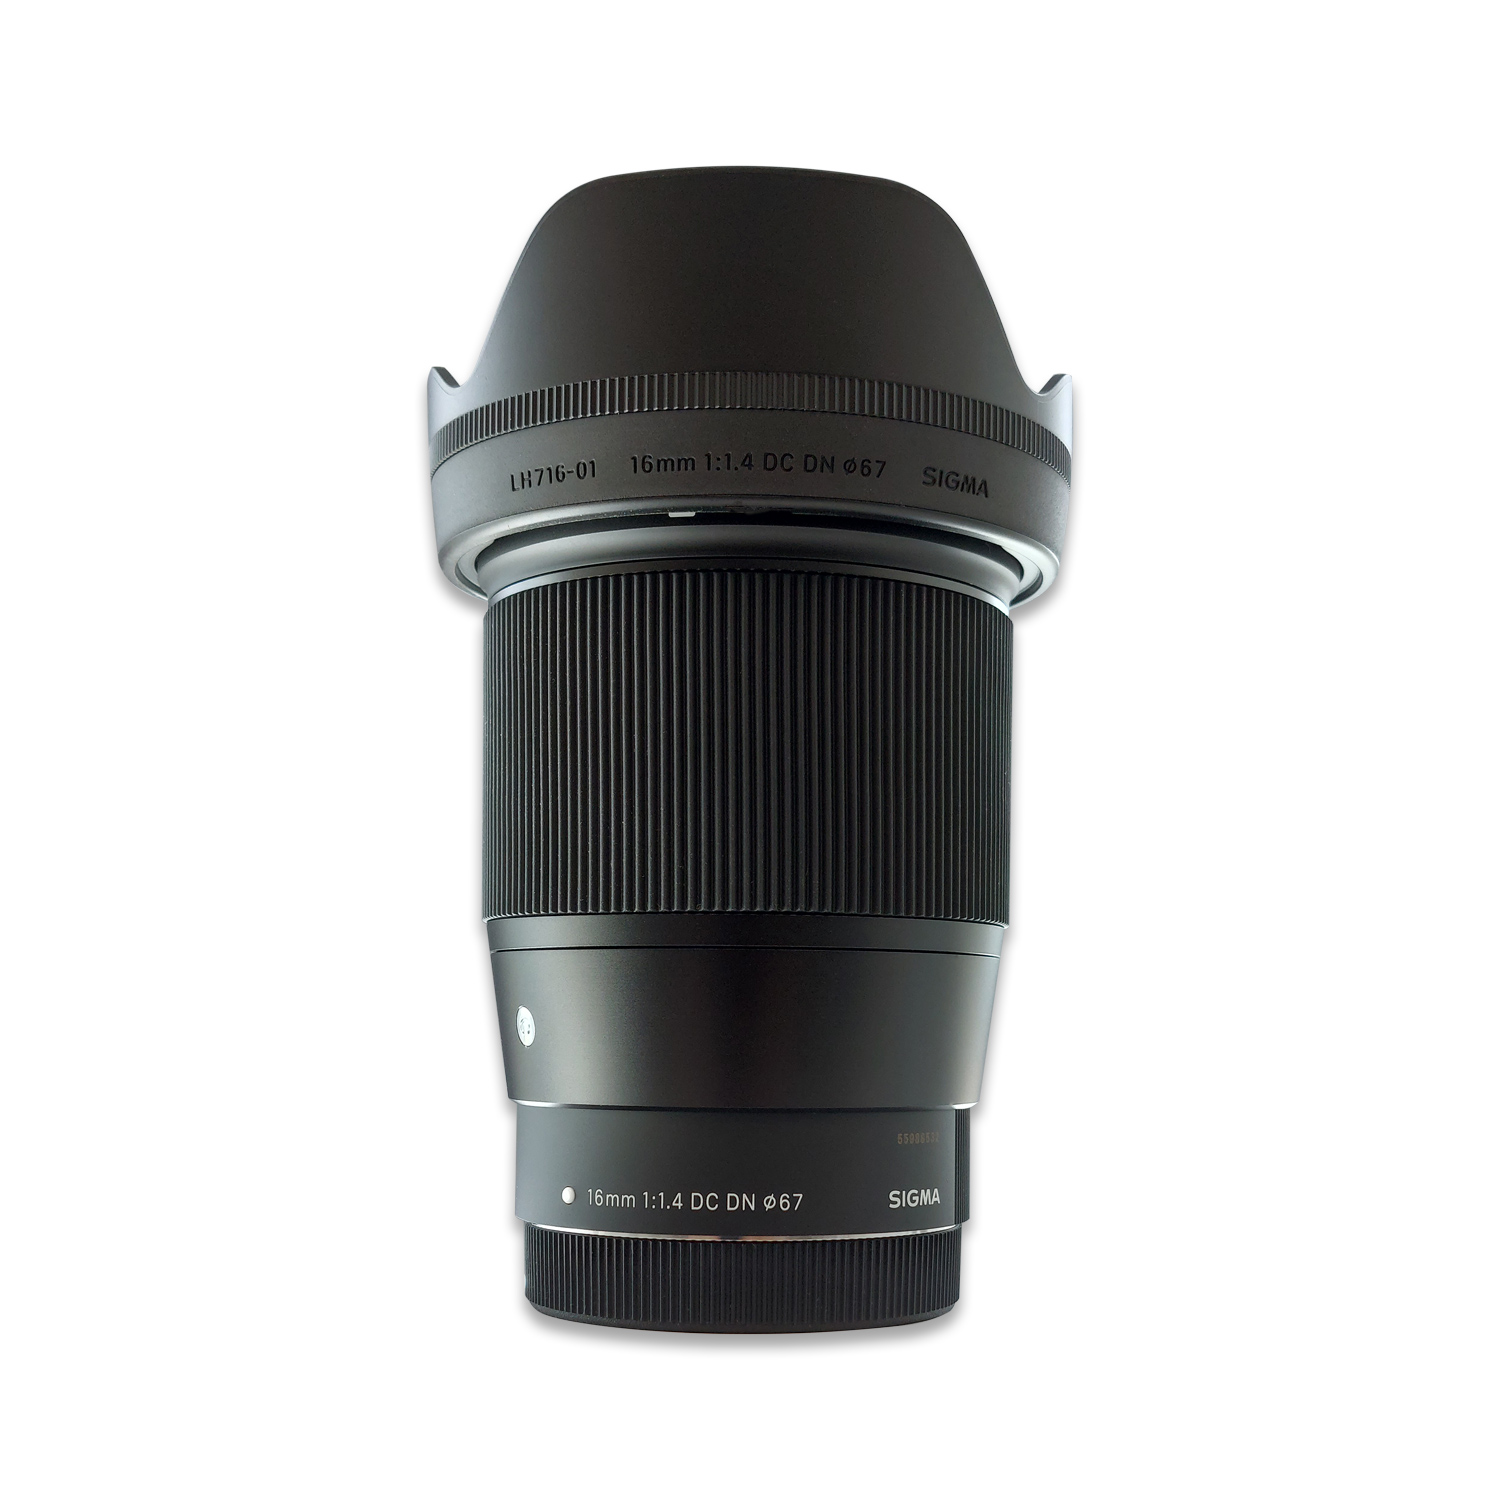 Sigma 16 mm F 1.4 DC DN Wechsel-Objektiv für Canon EF-M schwarz